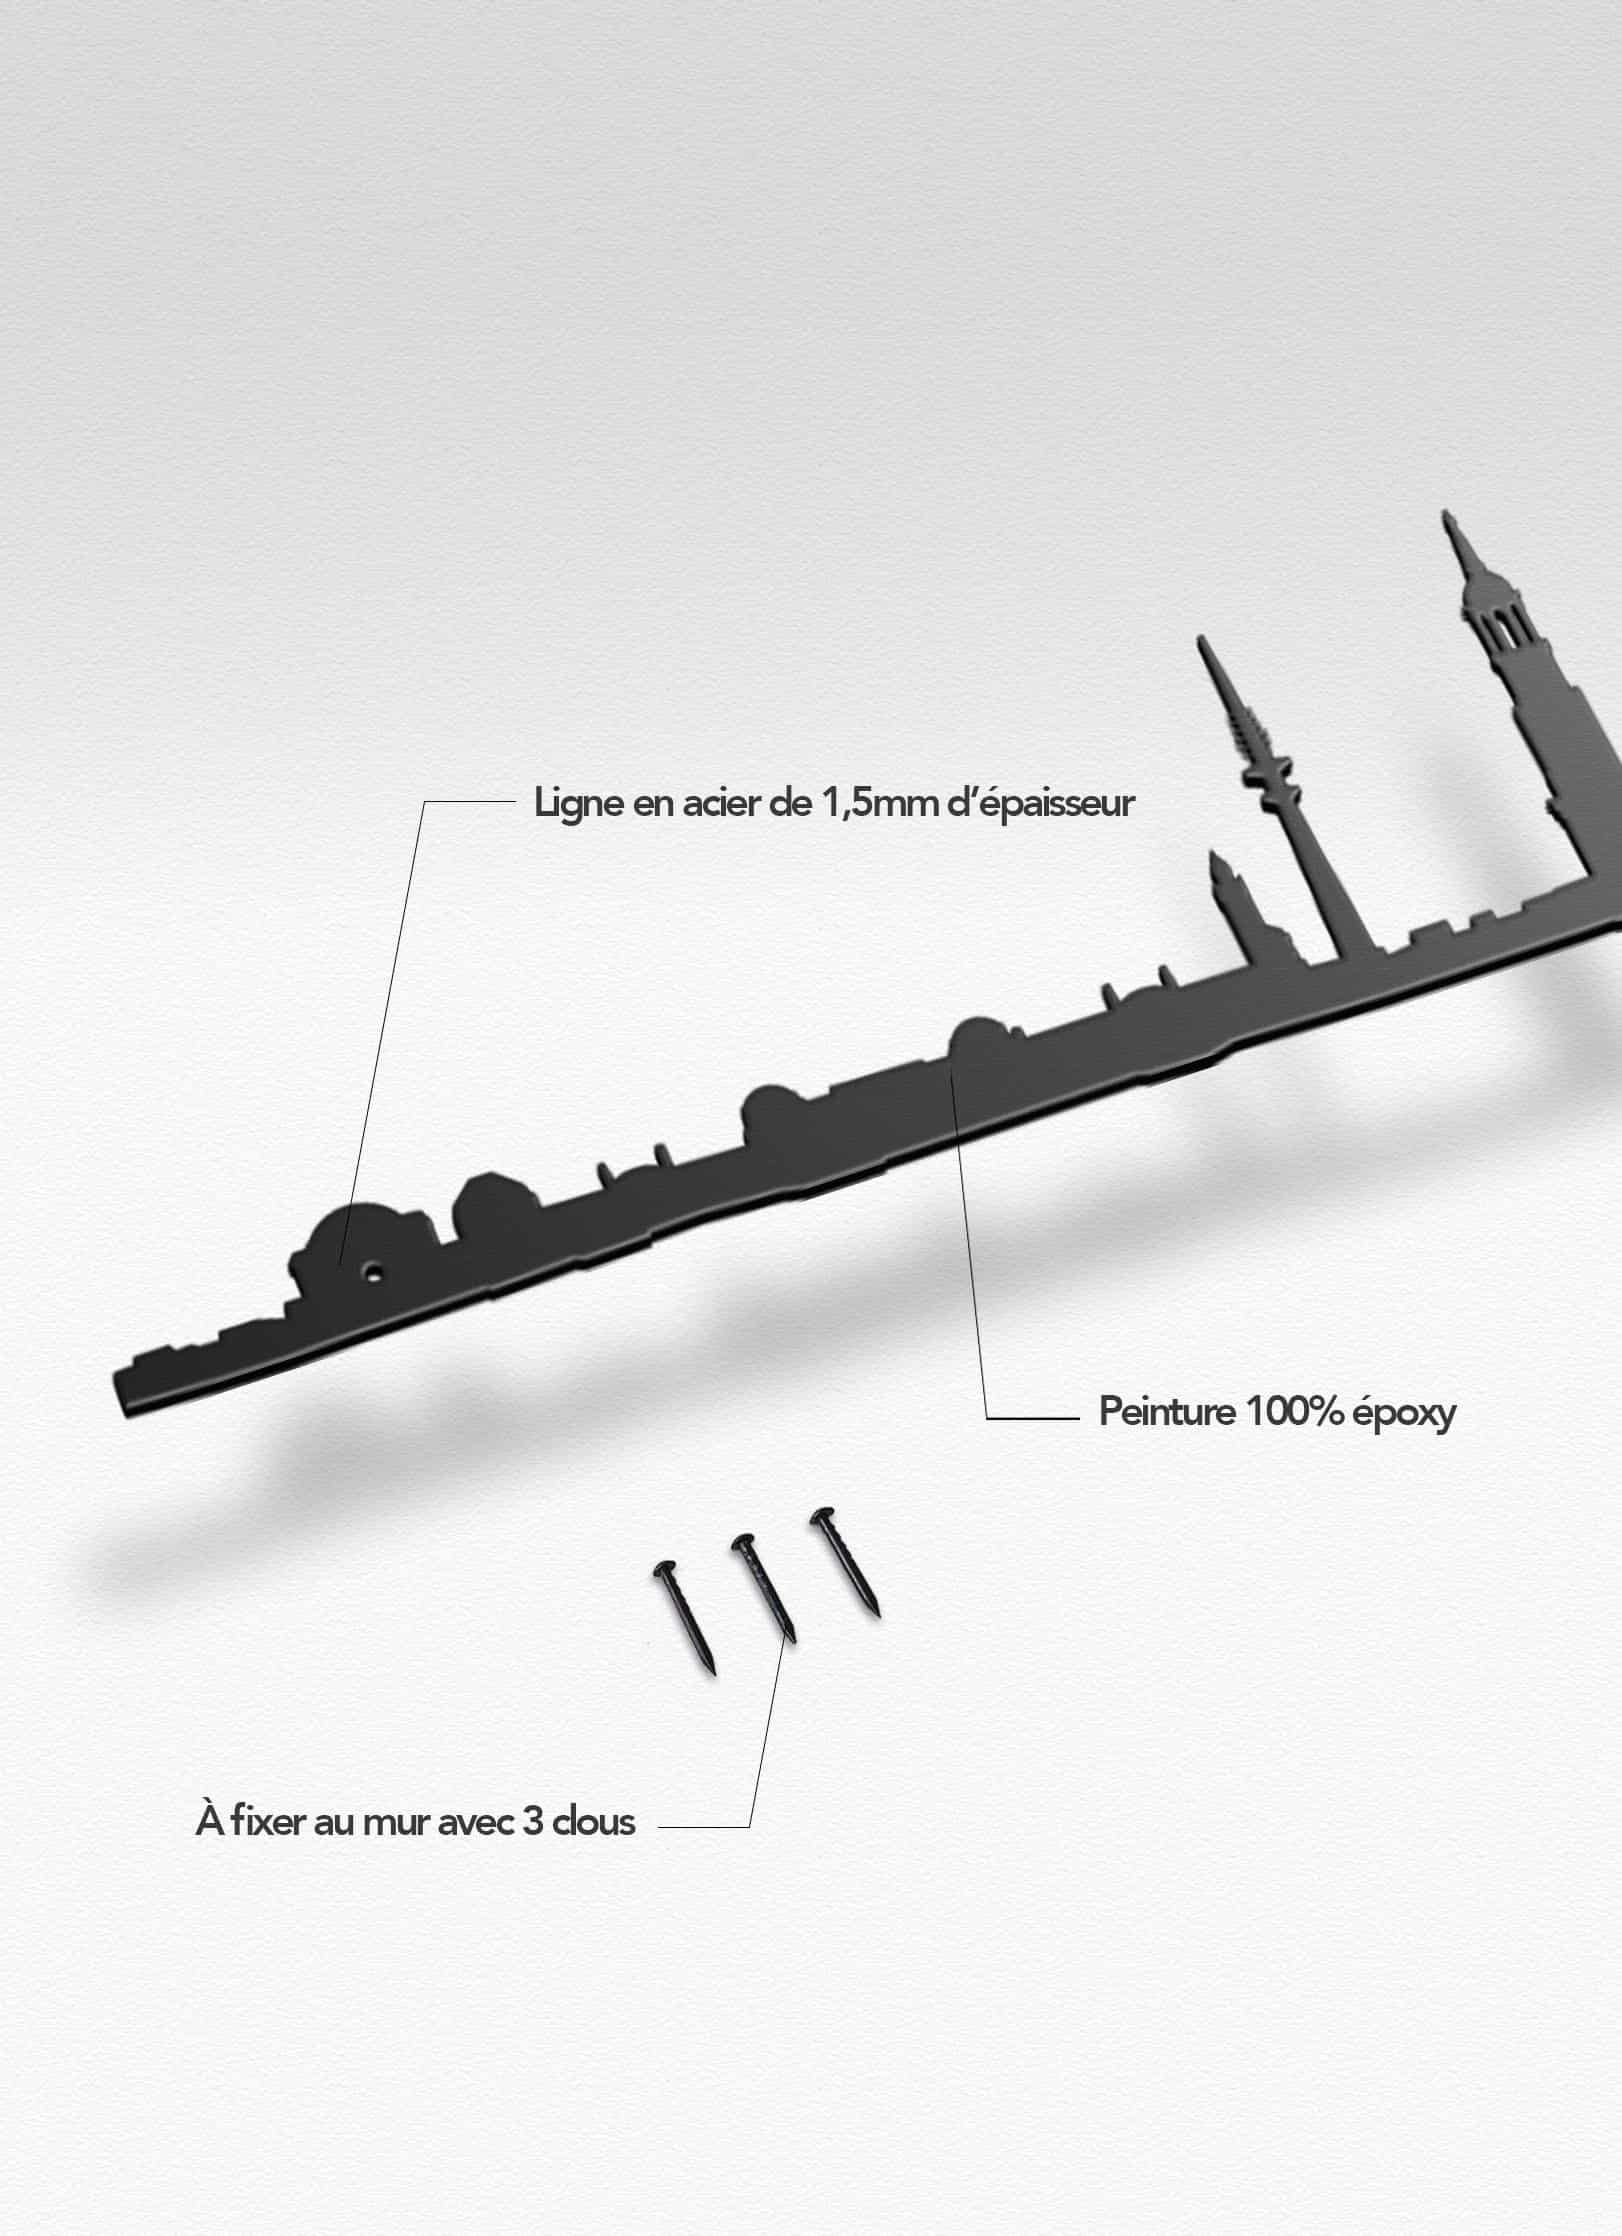 Presentation of the skyline of Hamburg